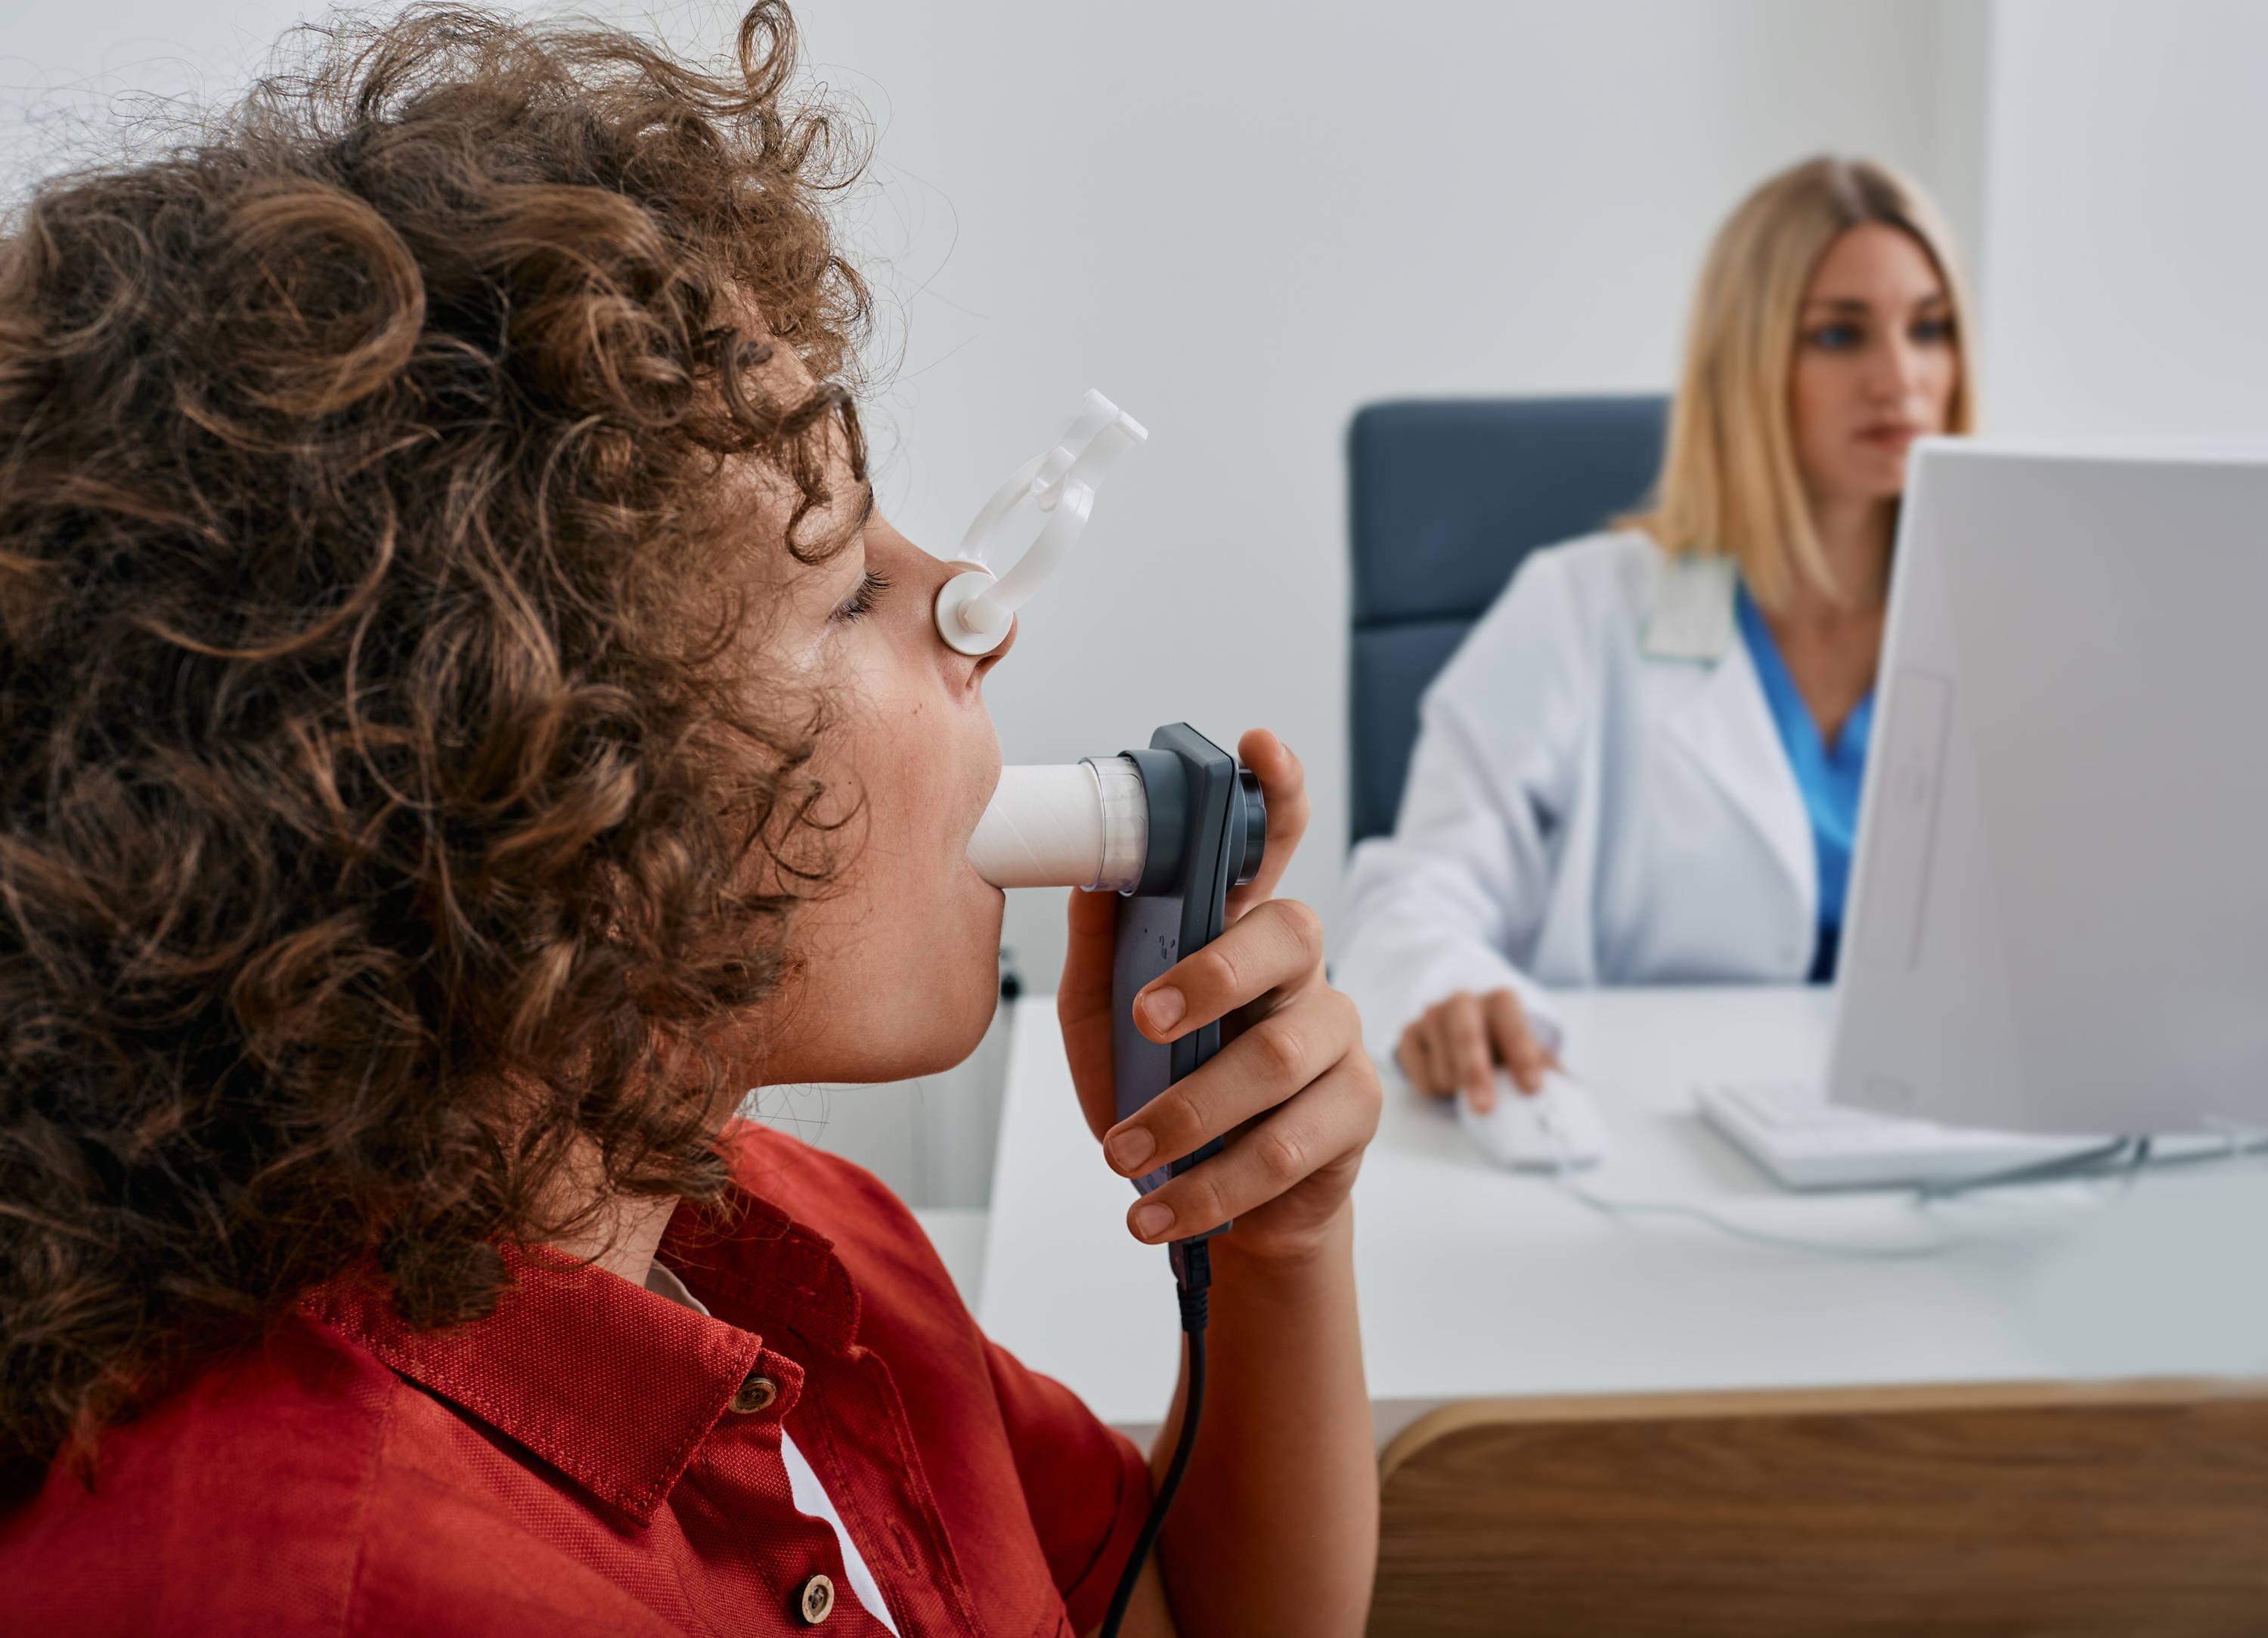 Kind bij de dokter krijgt een longfunctietest voor astma. Het kind draagt een neusclip en blaast in een buis.